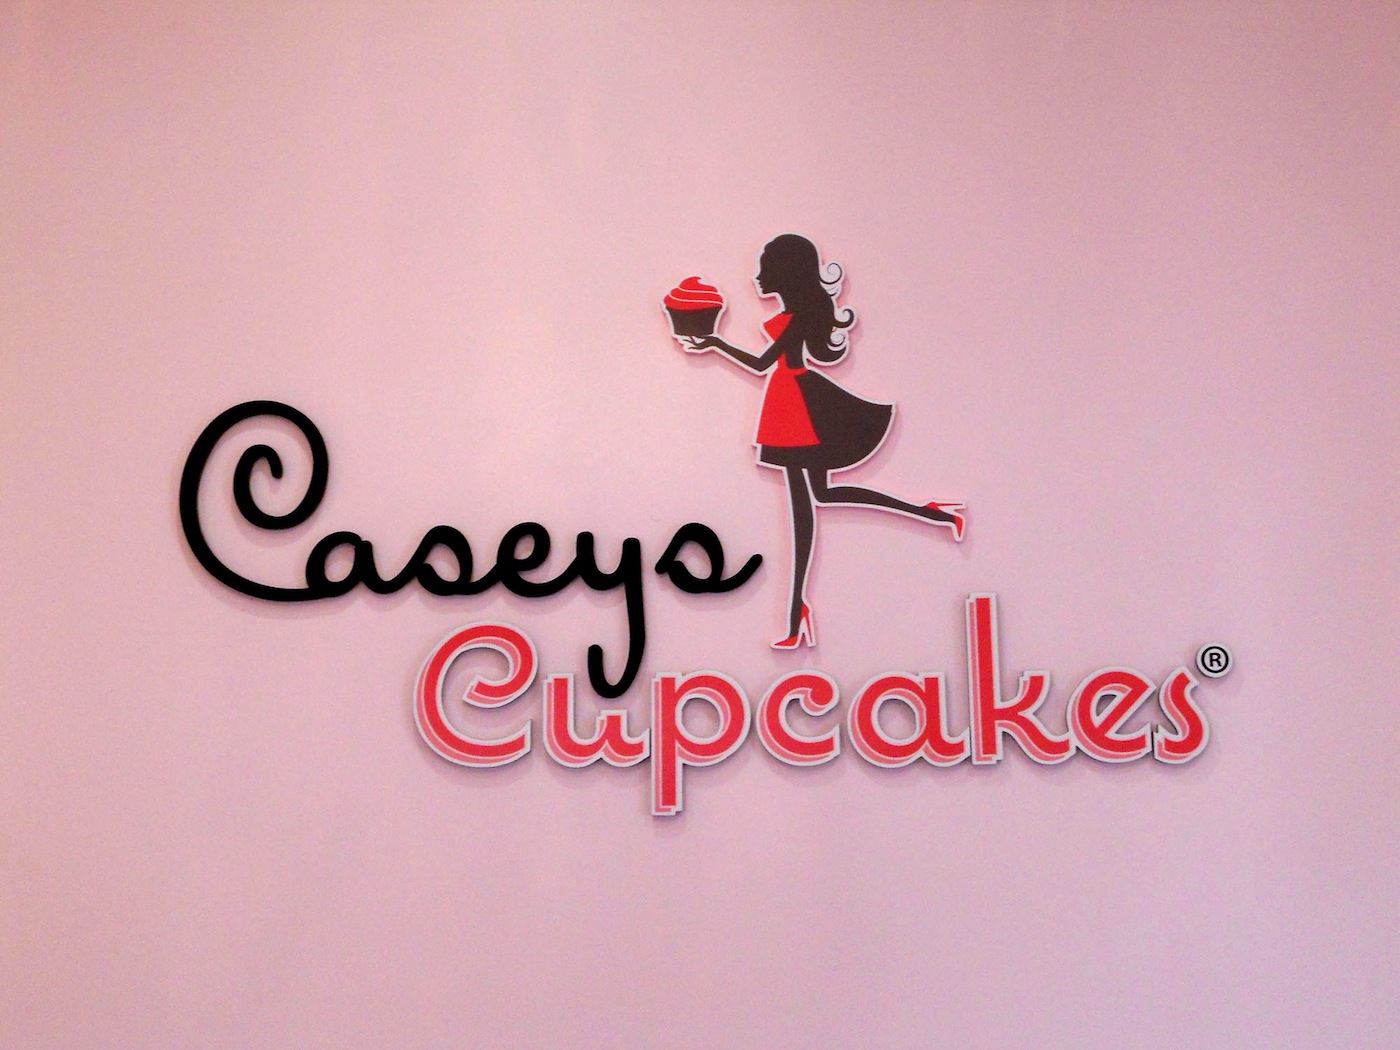 Caseys Cupcakes - Dimensional Acrylic Lobby Sign